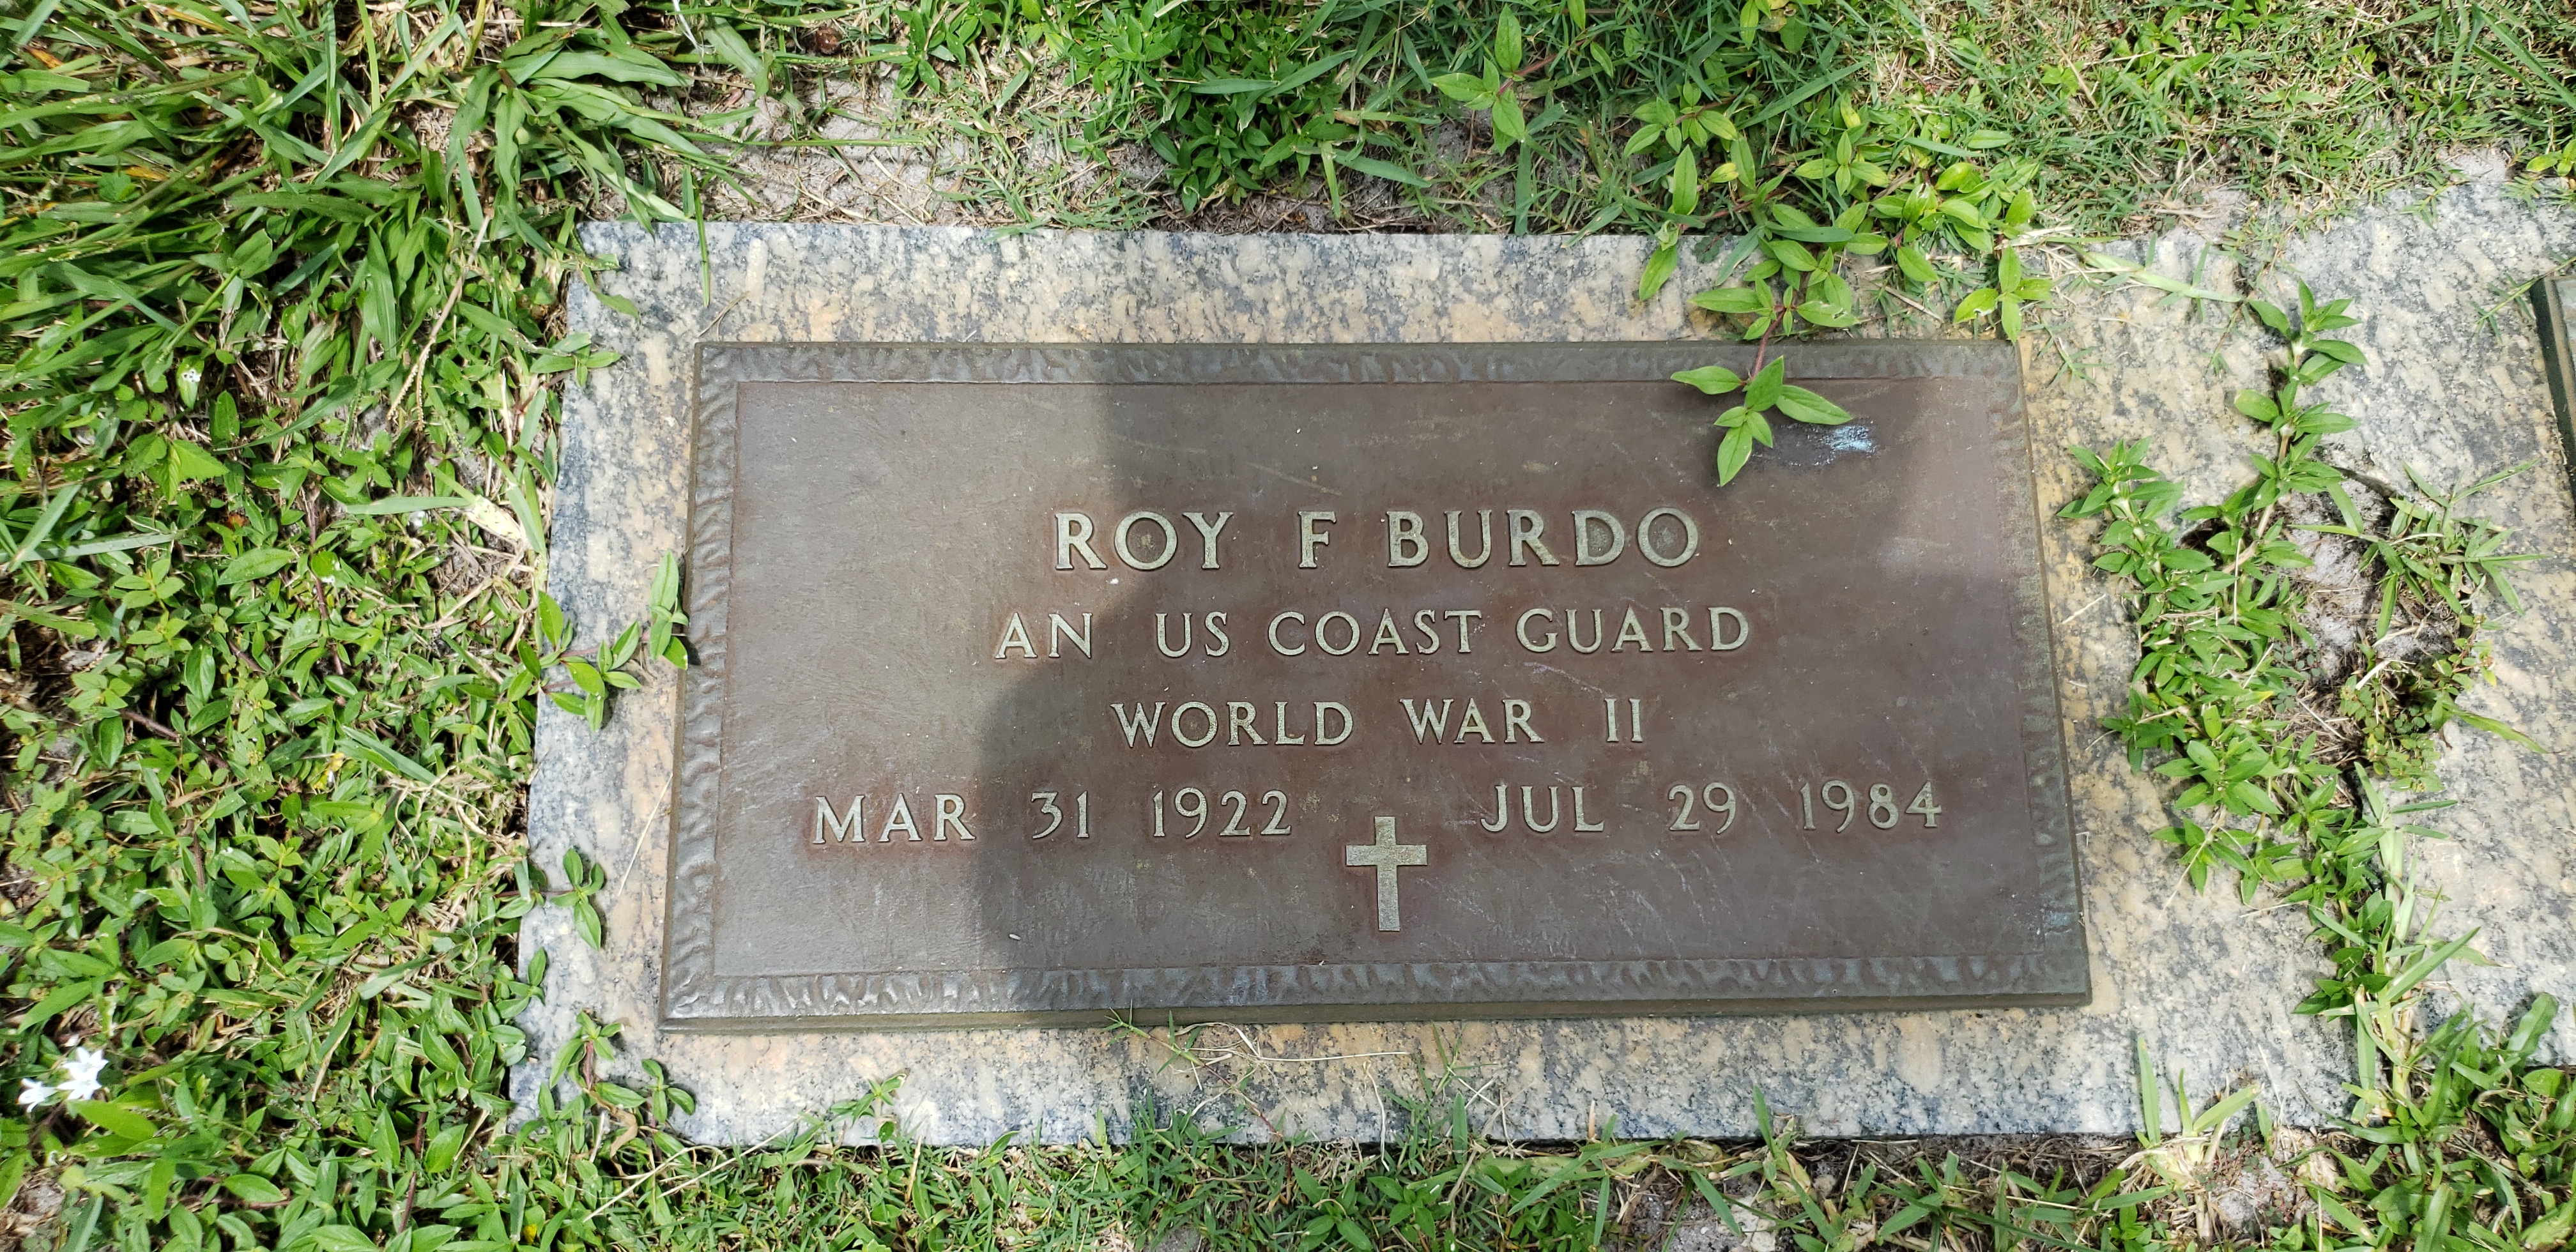 Roy F Burdo